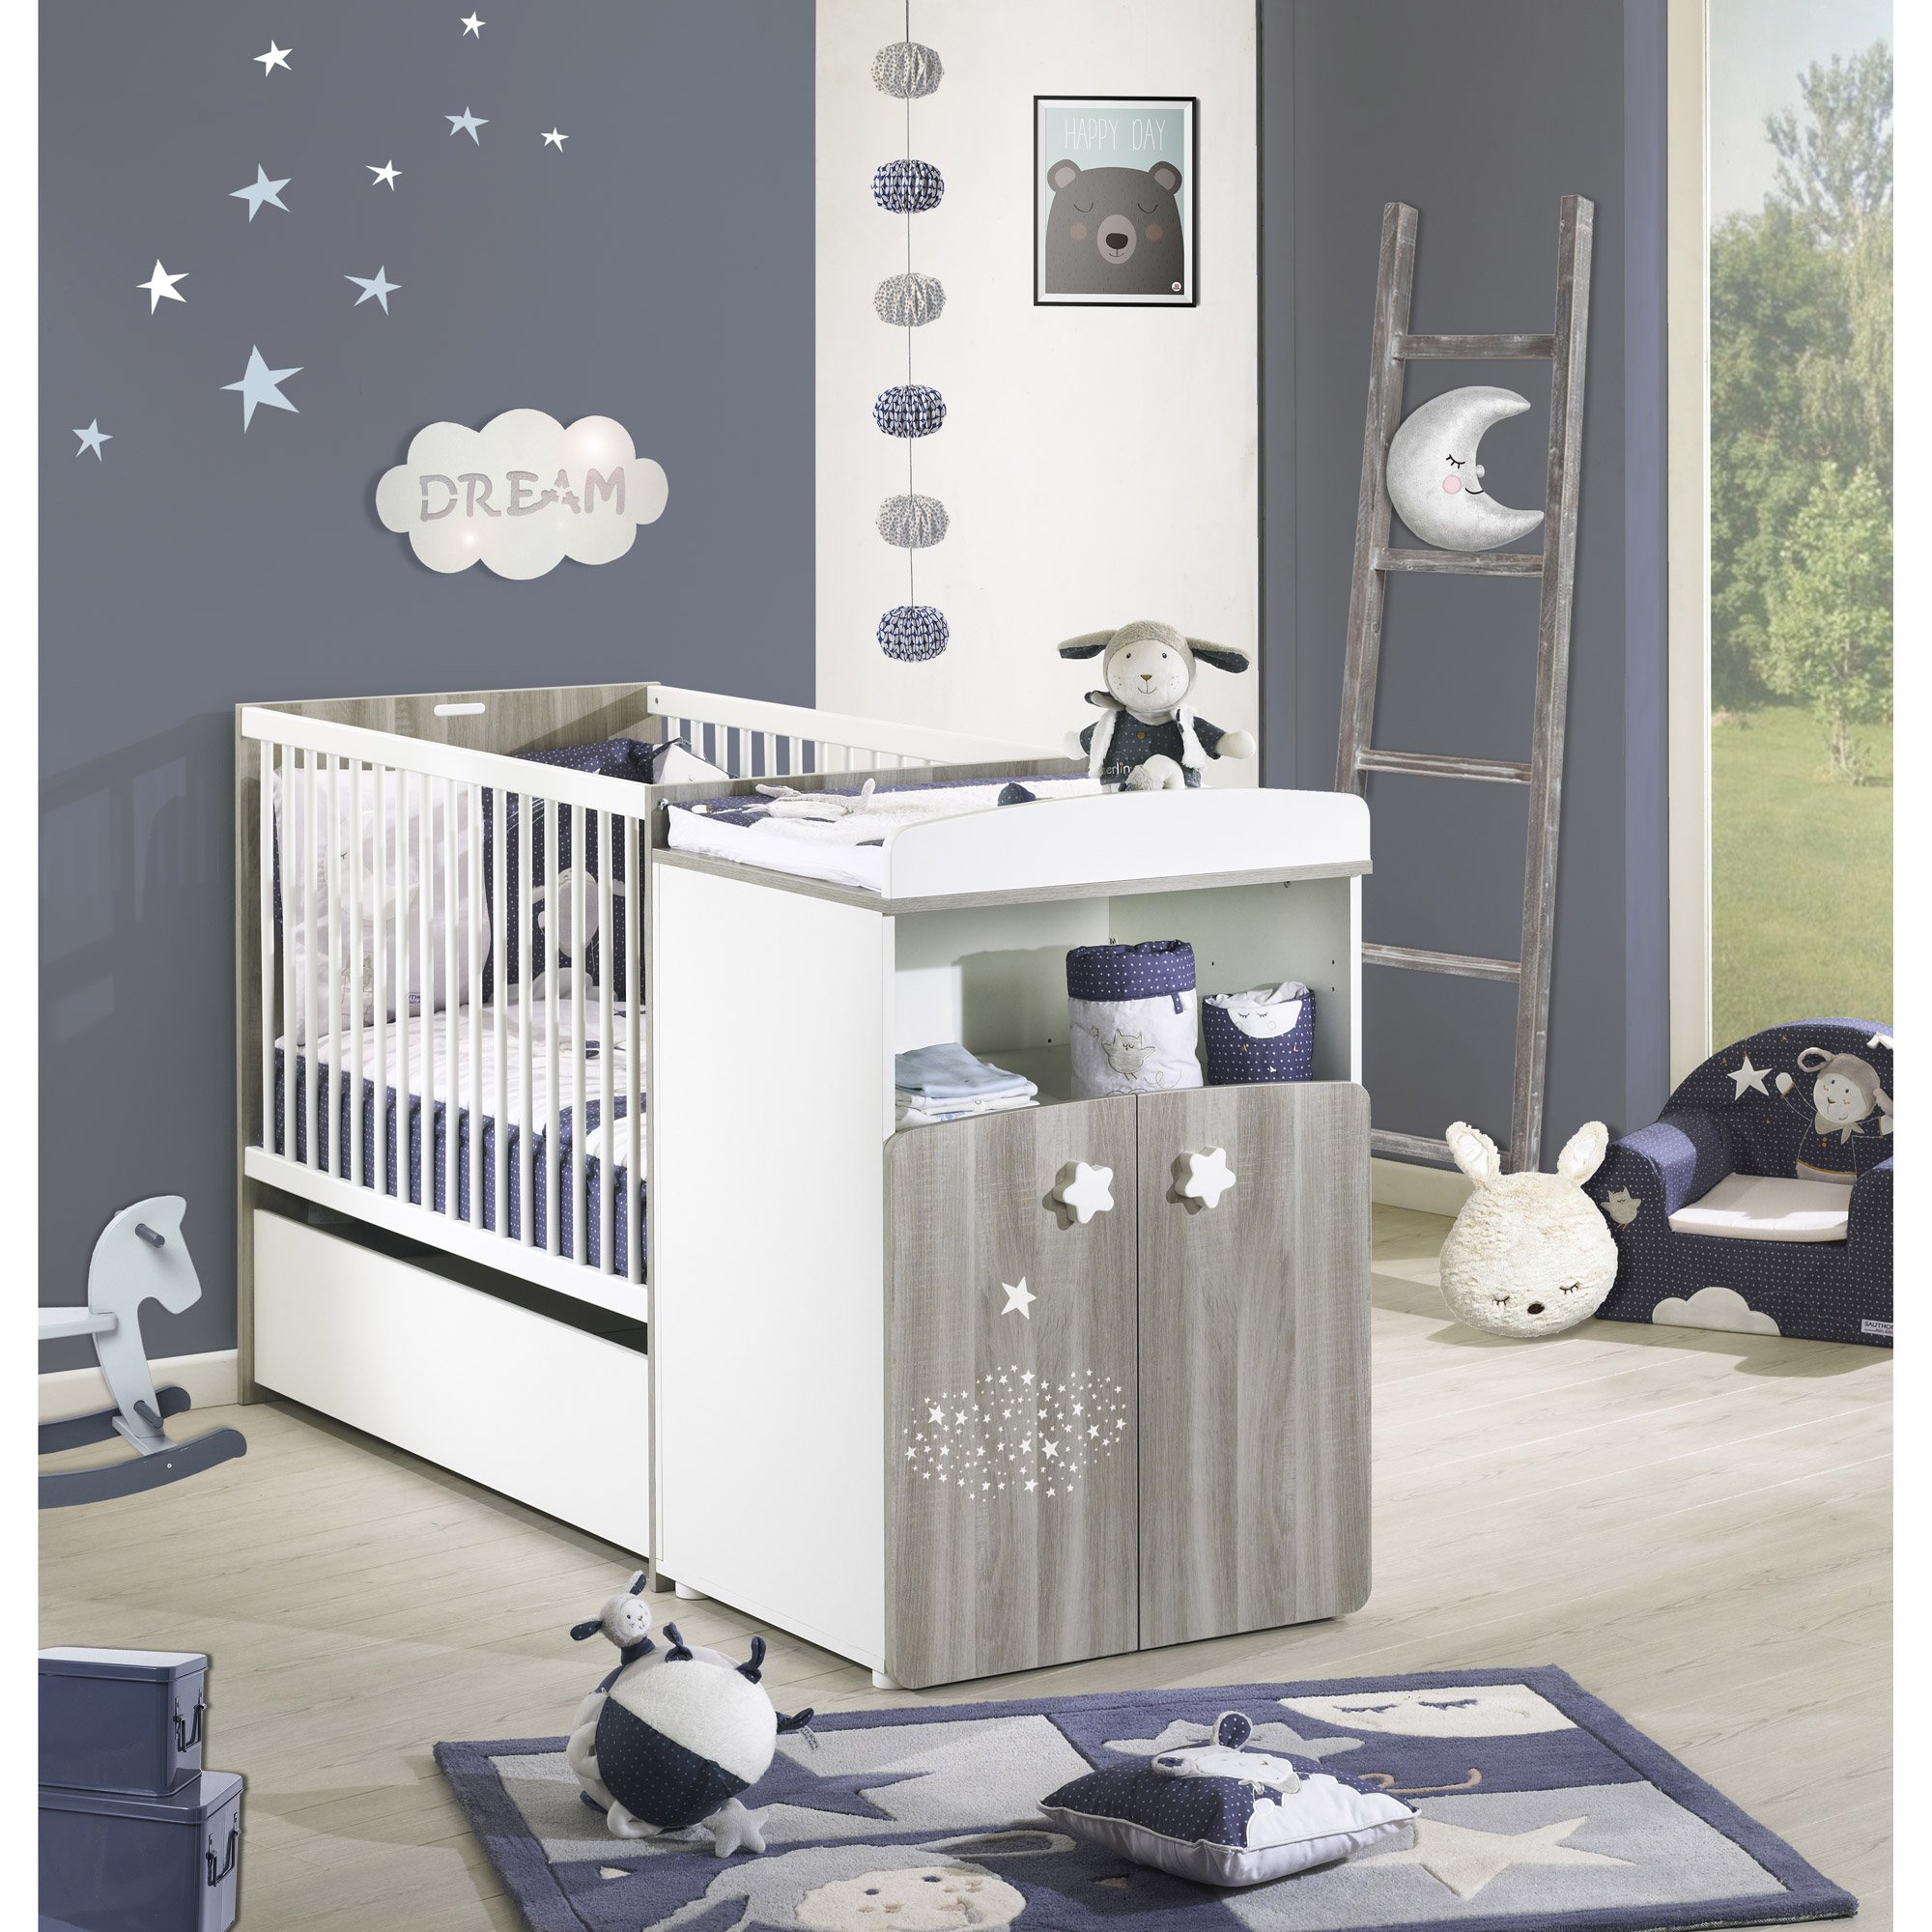 Tout pour la chambre de bébé : lits bébé, lits évolutifs, articles pour bébé  – Sauthon